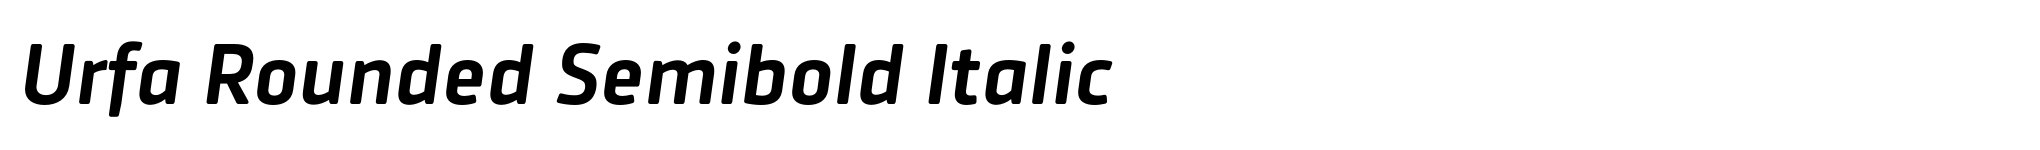 Urfa Rounded Semibold Italic image